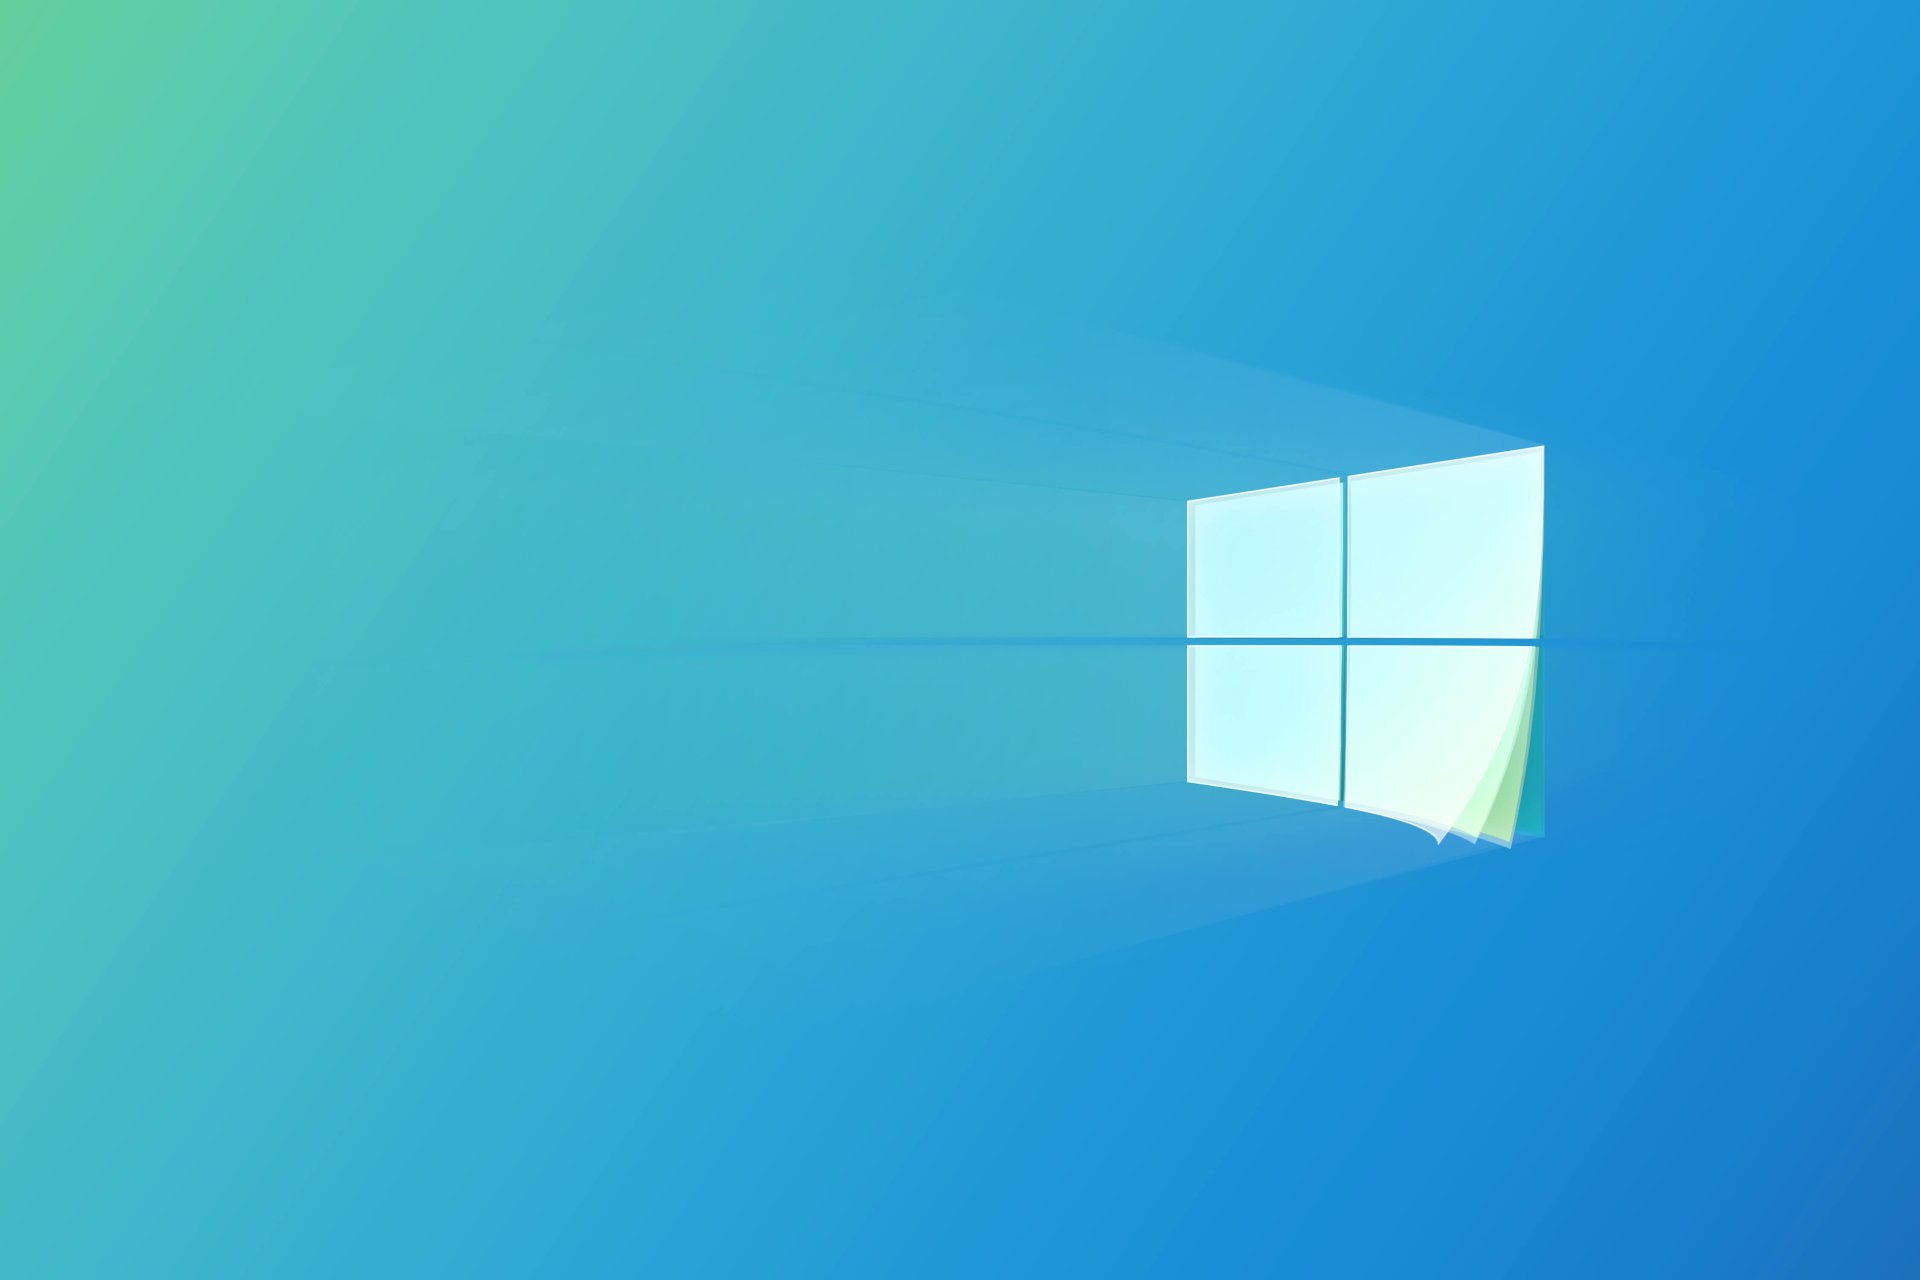 Fluent Design của Windows 10 tạo ra những giao diện độc đáo, thẩm mỹ và dễ sử dụng. Bạn muốn biết thêm về những tính năng đáng chú ý của thiết kế này? Bạn hiểu tiếng Việt hãy xem bài viết của Genrole Caspe và tham gia vào một trải nghiệm đầy tuyệt vời.